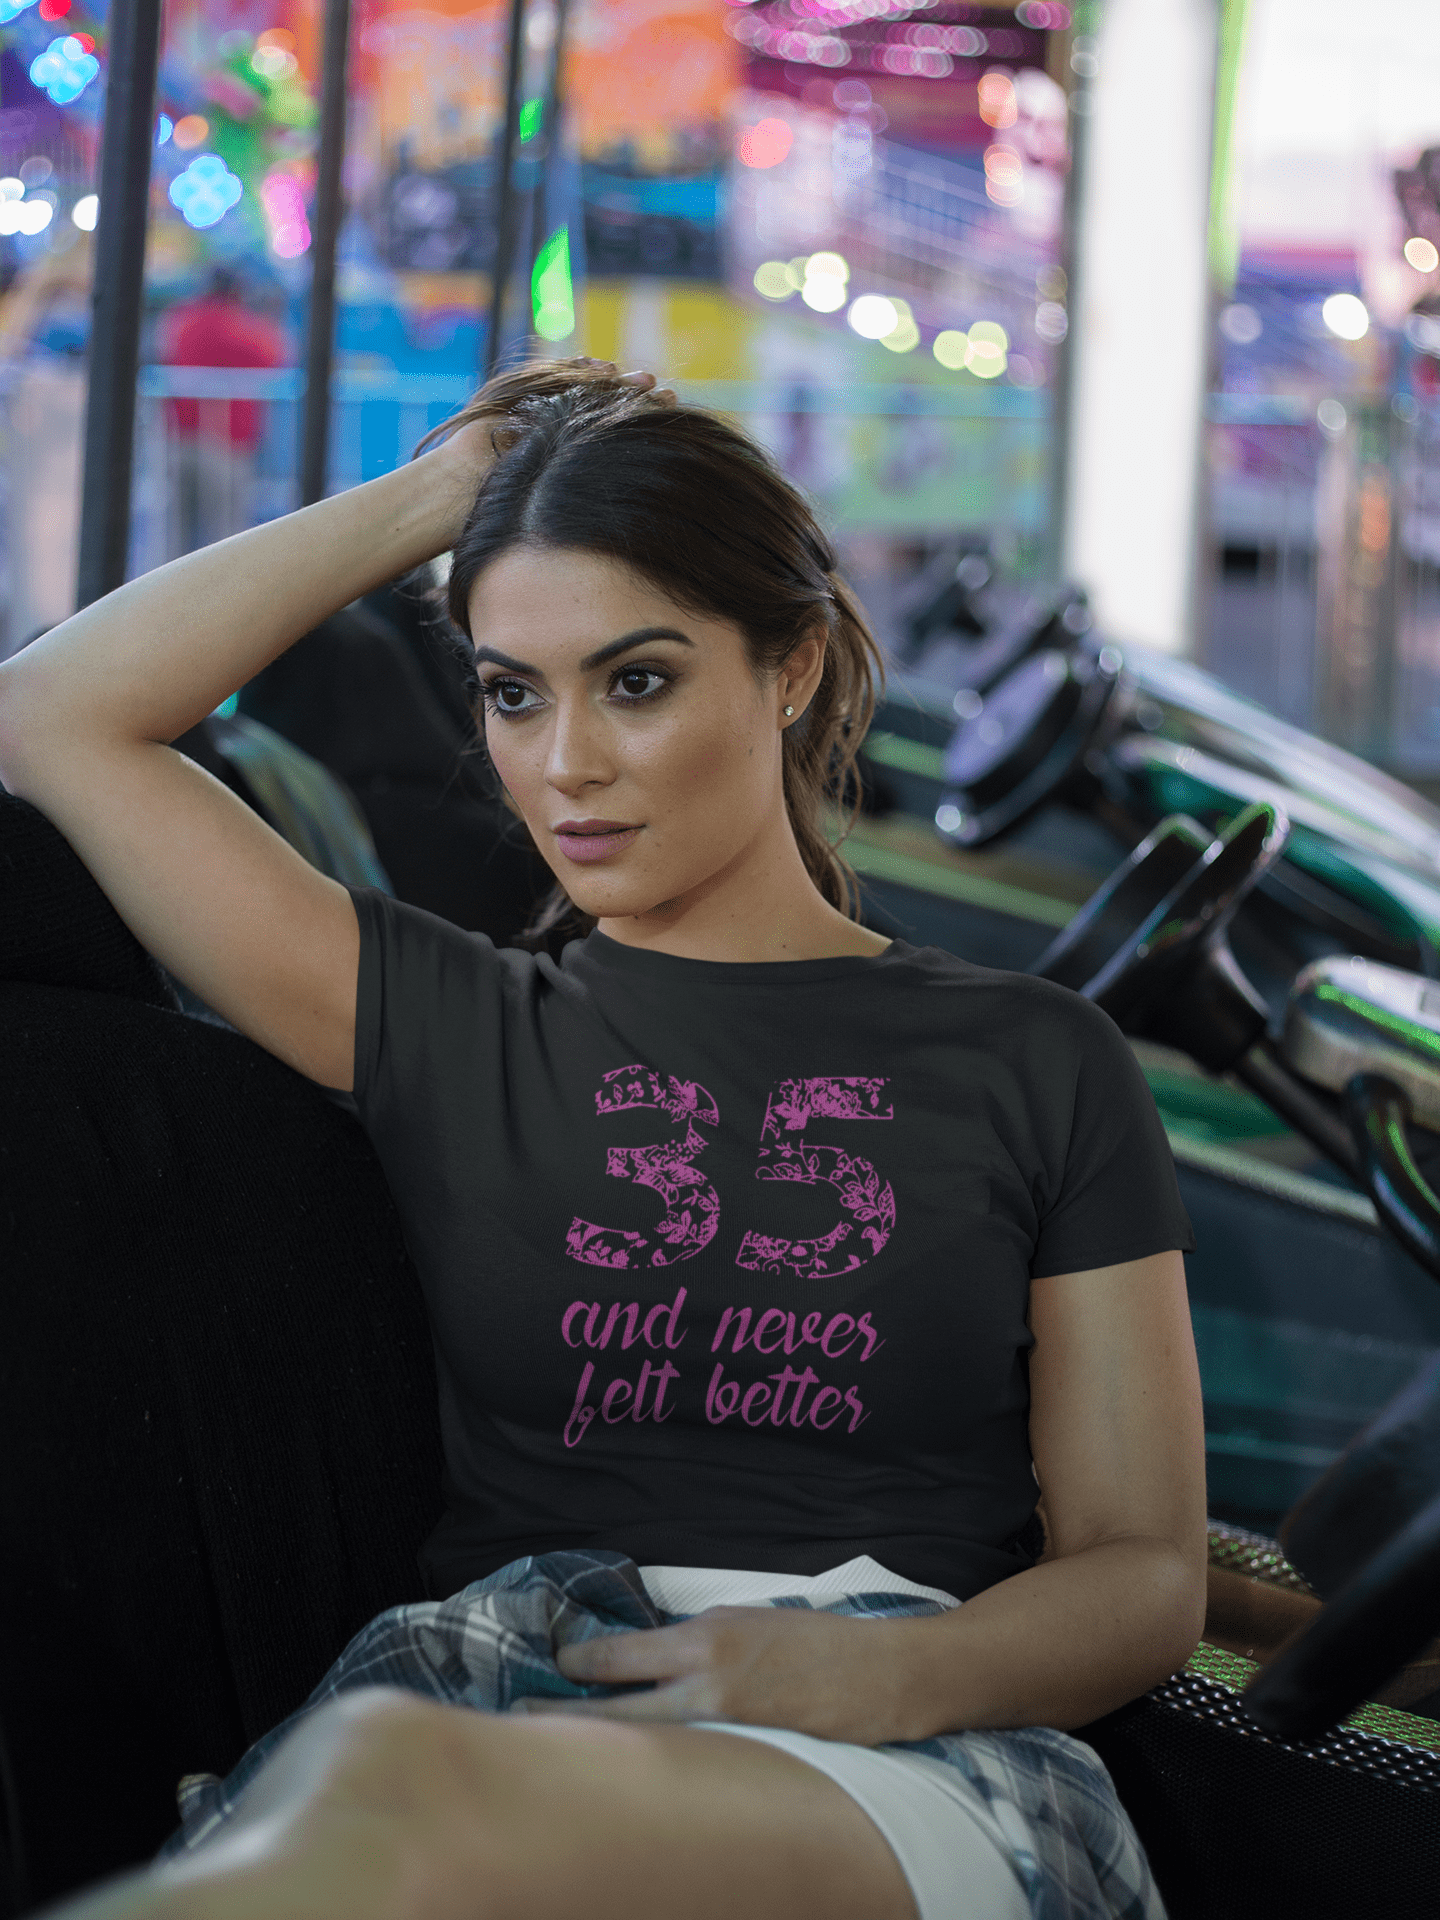 35 And Never Felt Better Women's T-shirt Black Birthday Gift 00408